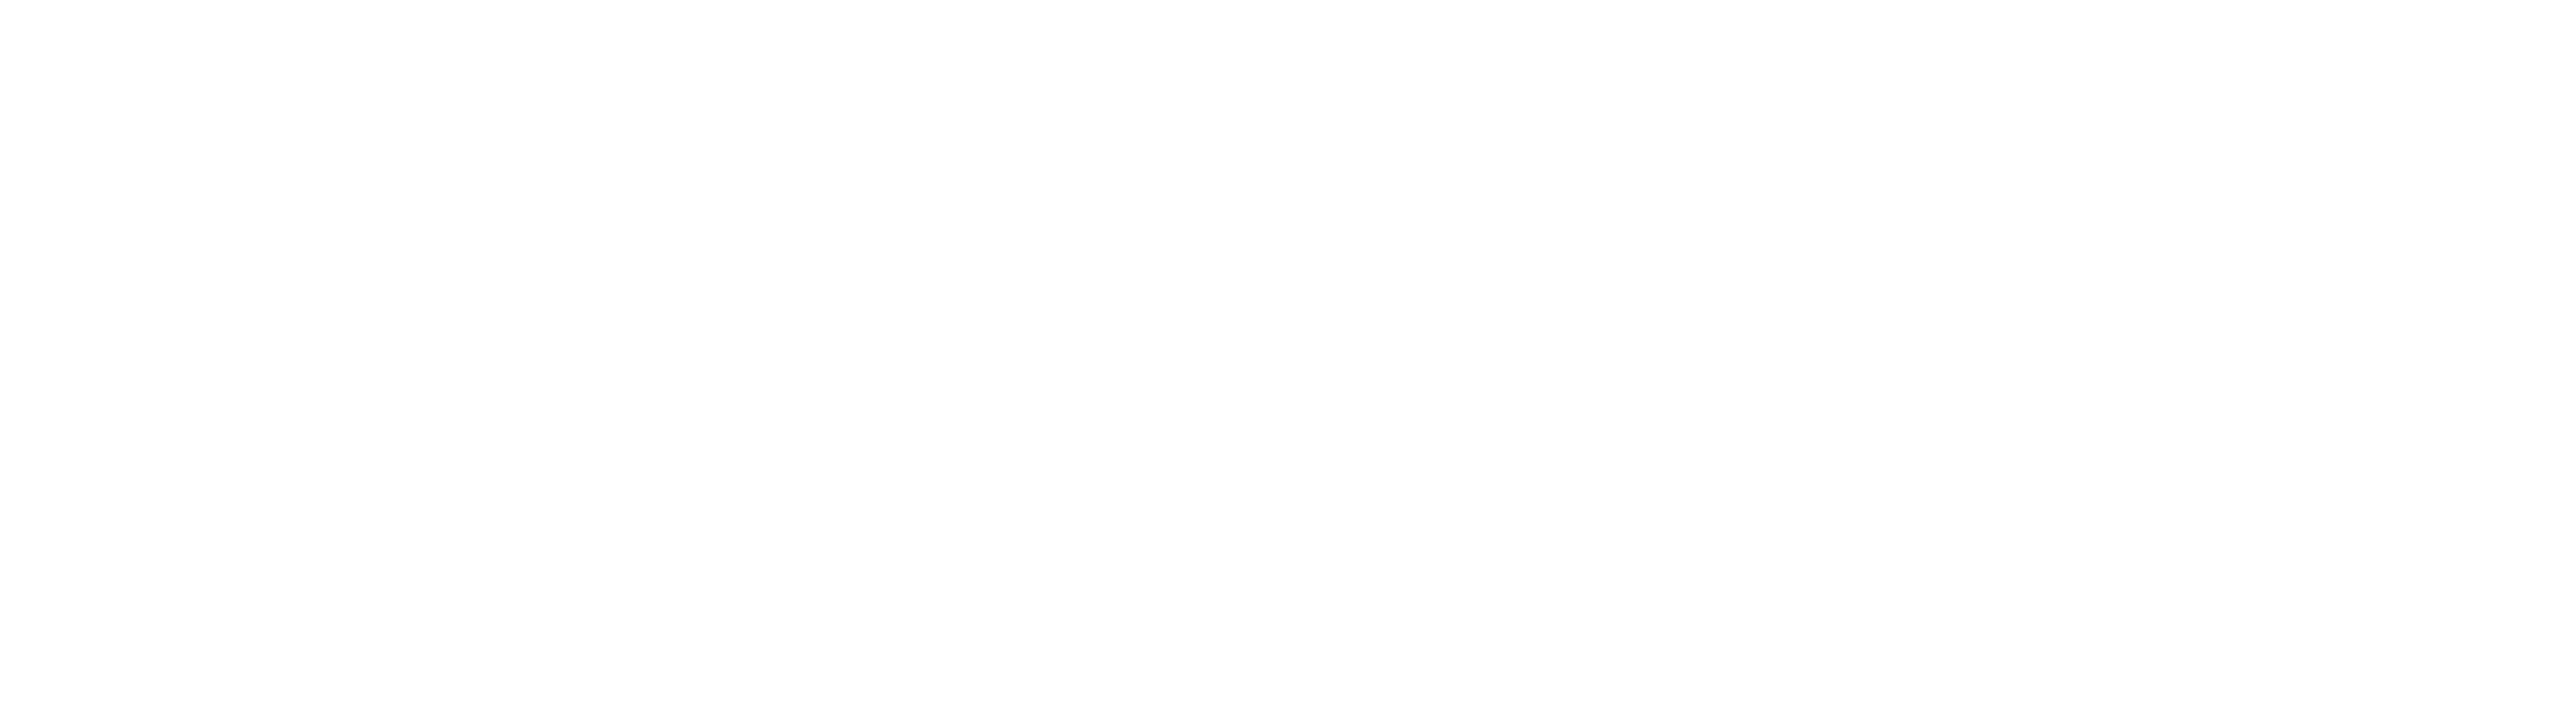 Logo LM Ingénierie